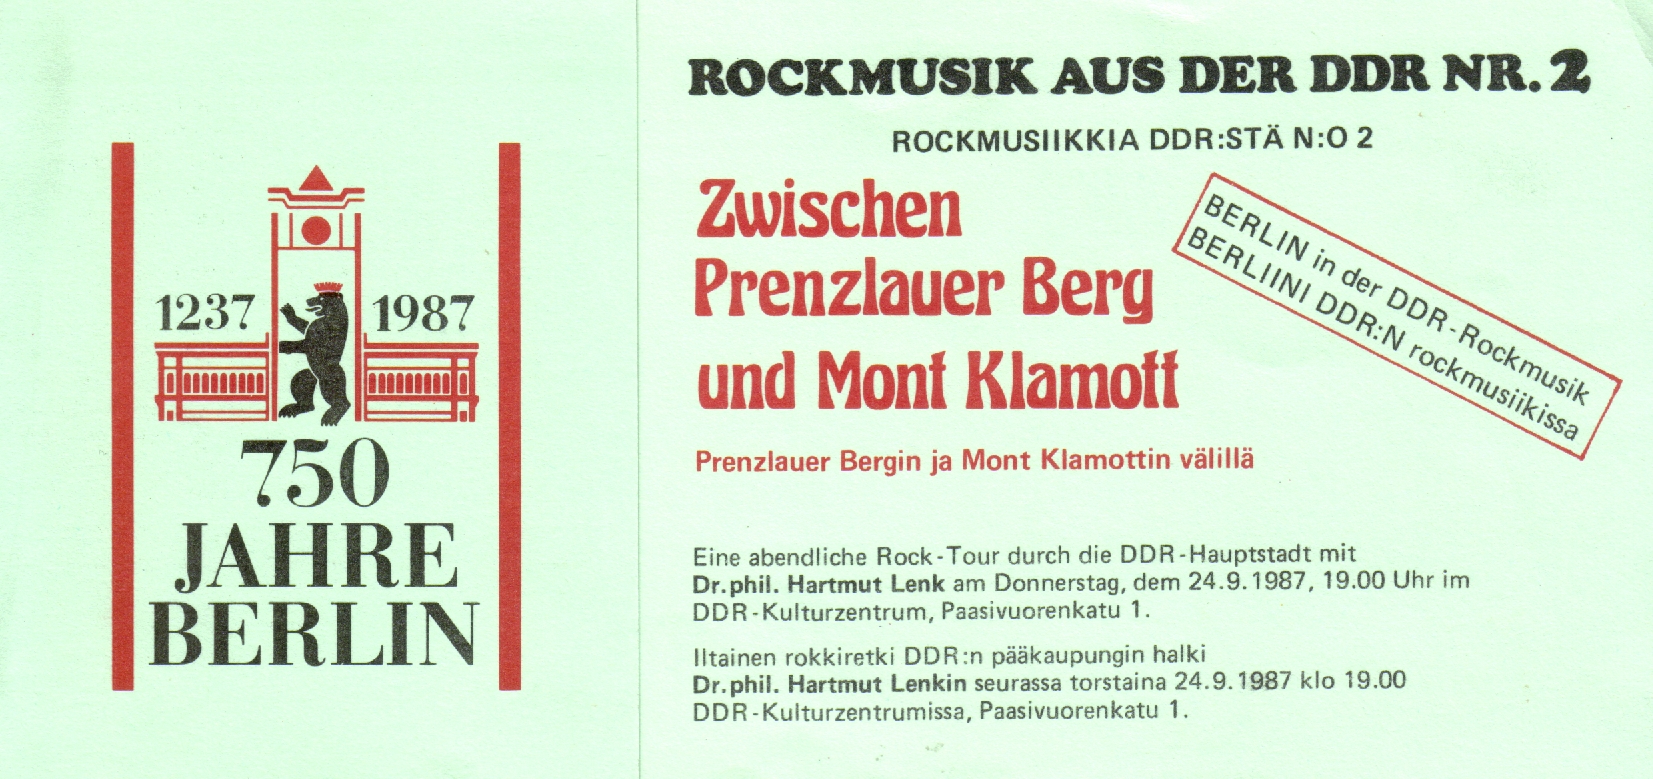 Einladung zur 2. KuZ-Veranstaltung Rockmusik aus der DDR